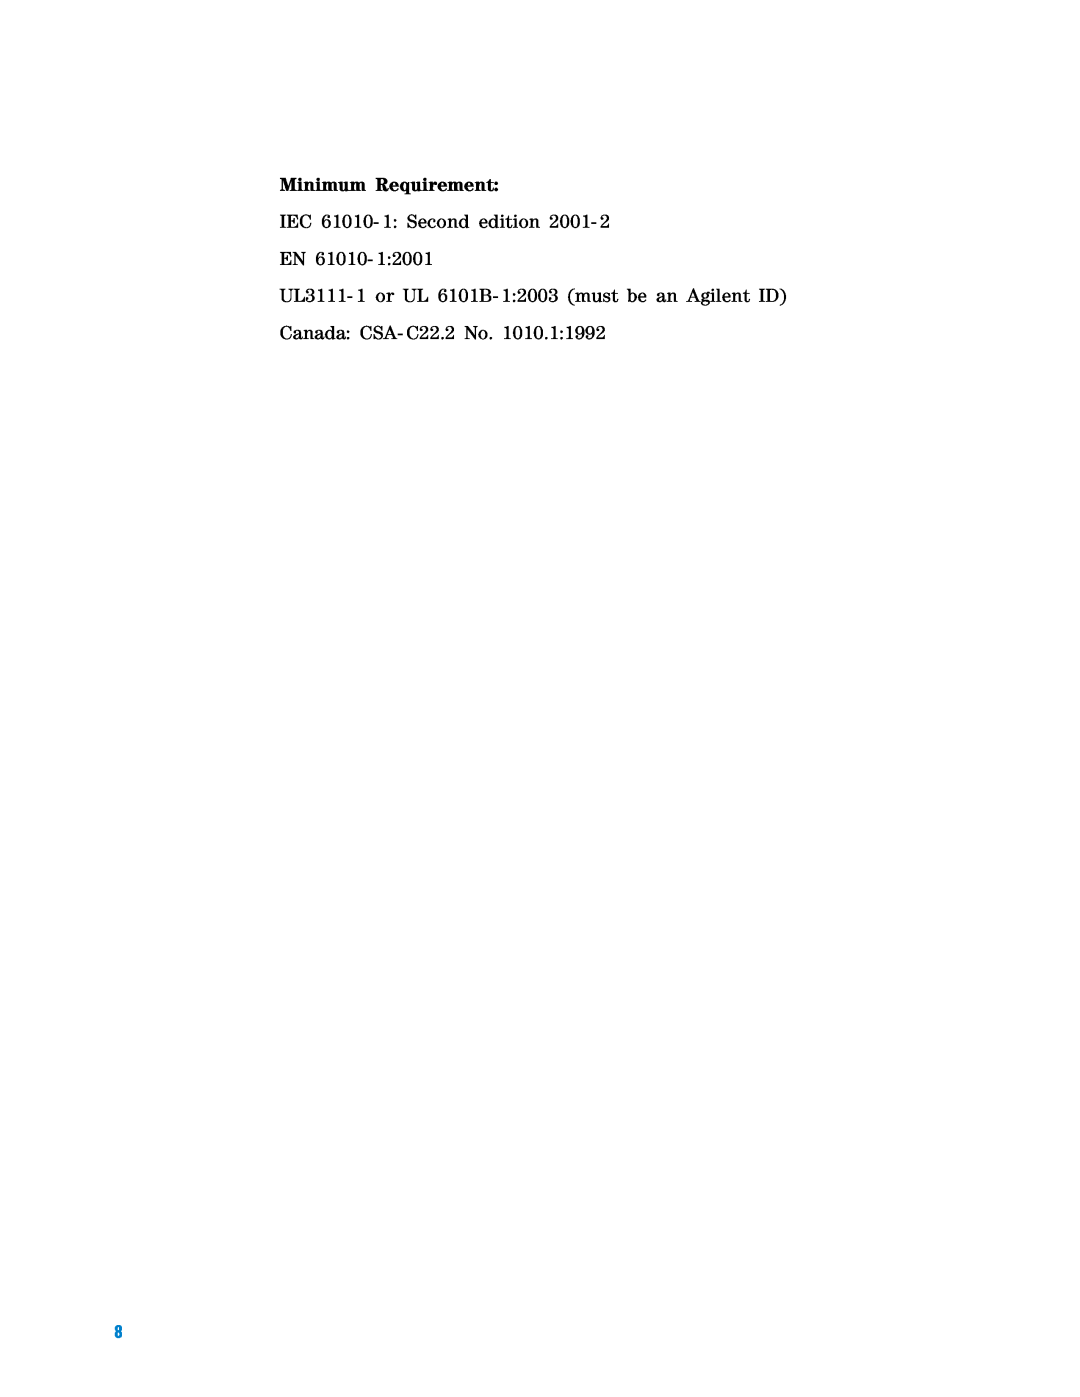 Agilent Technologies U7242A manual Minimum Requirement, IEC 61010- 1 Second edition 2001 EN 